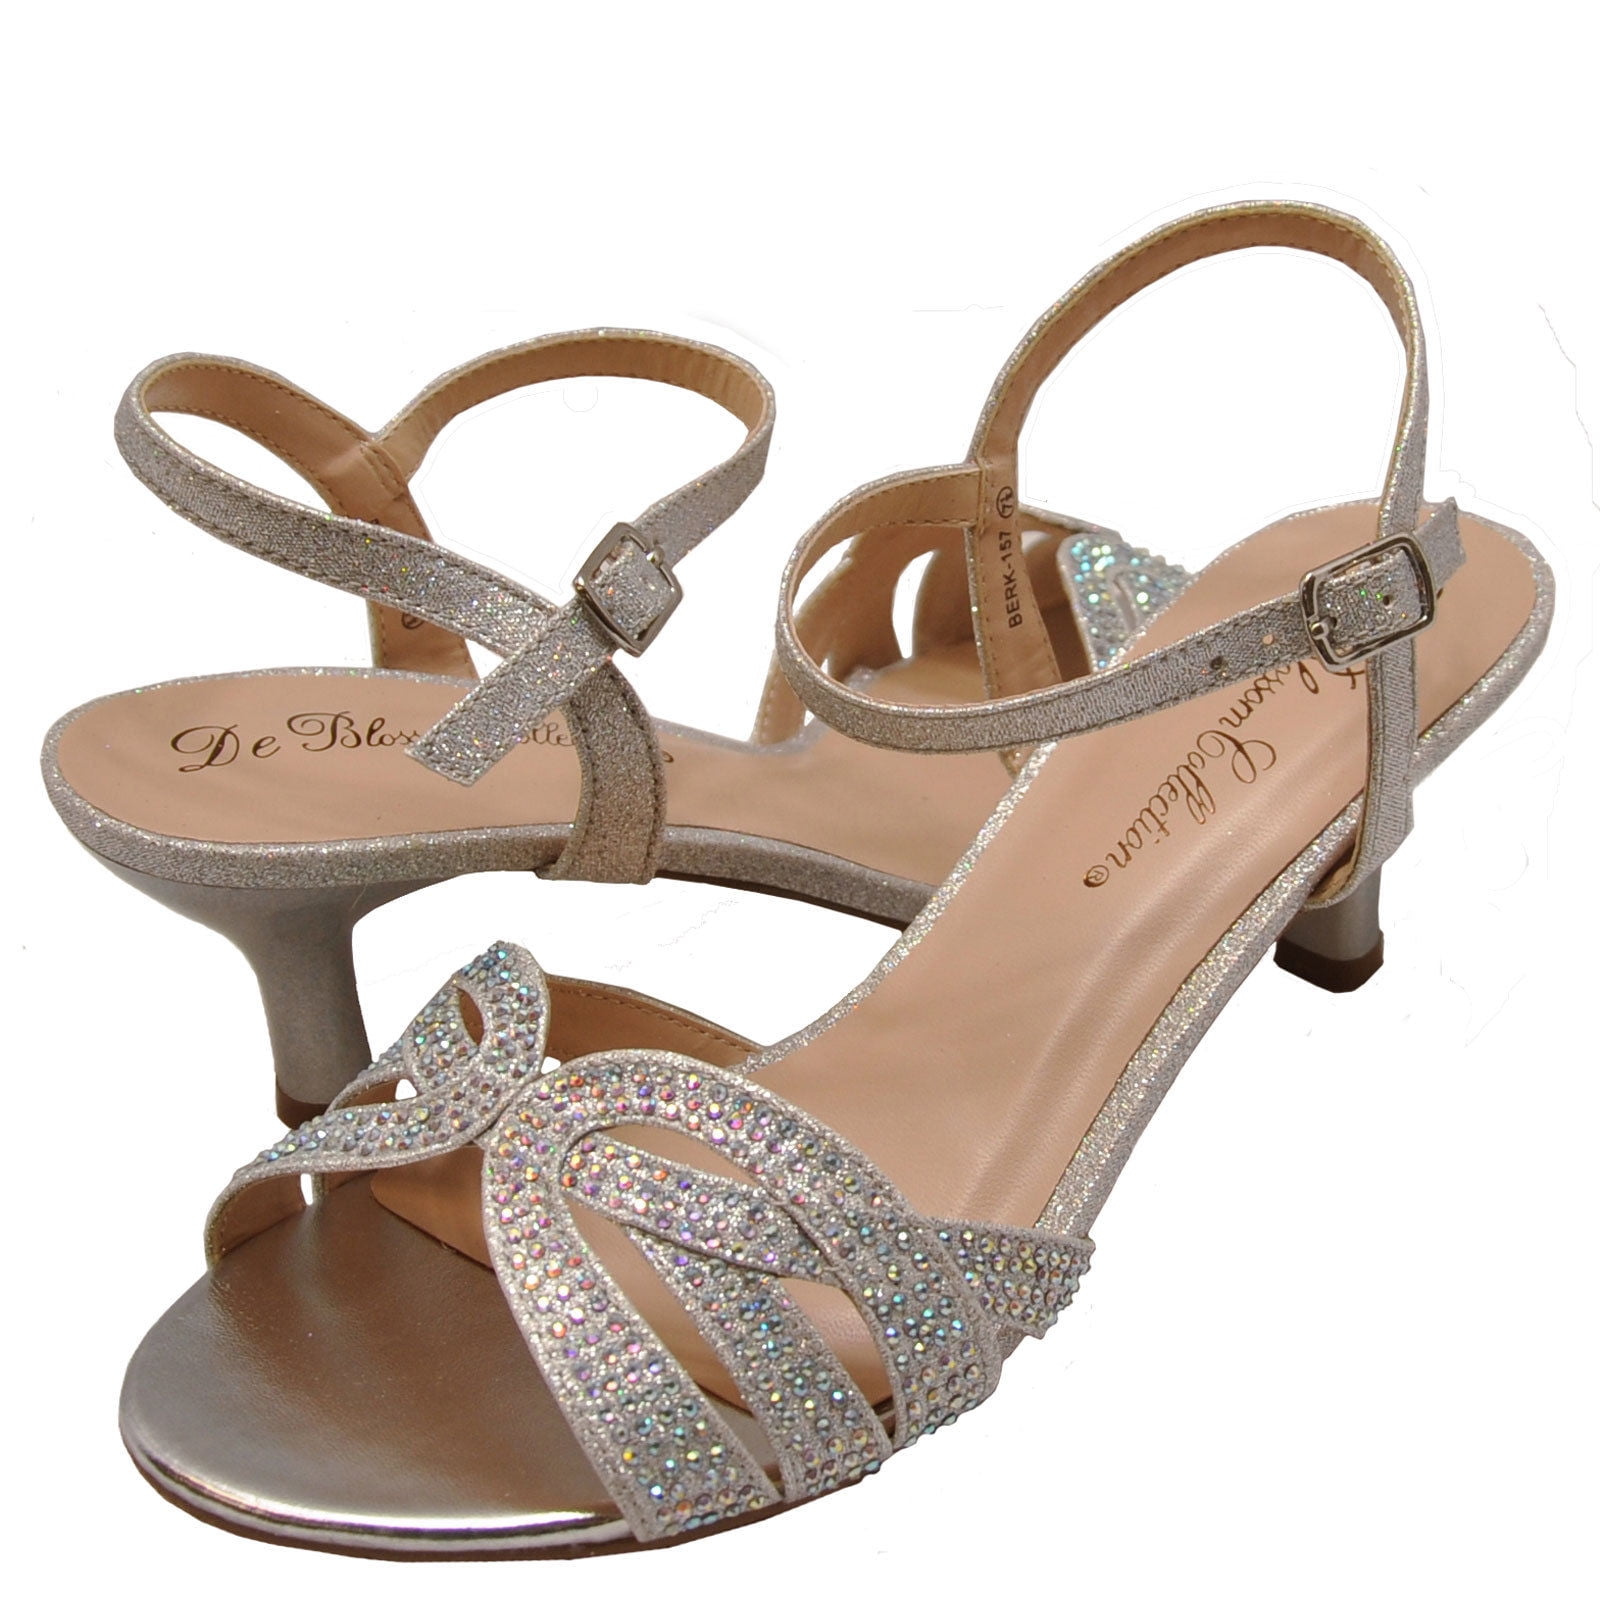 embellished low heel sandals